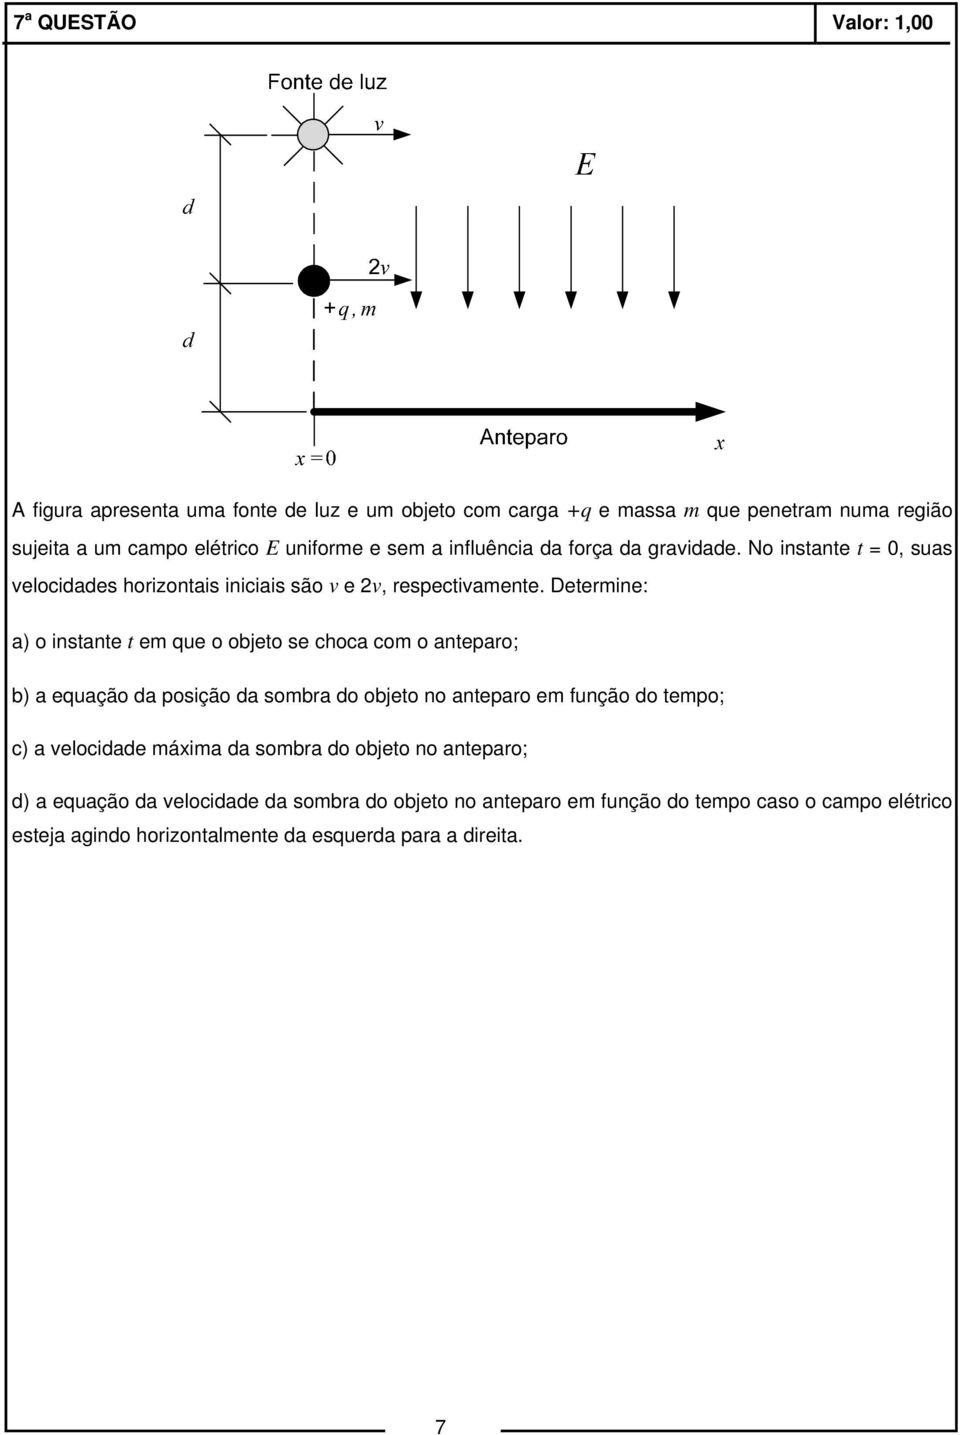 Determine: a) o instante t em que o objeto se choca com o anteparo; b) a equação da posição da sombra do objeto no anteparo em função do tempo; c) a velocidade